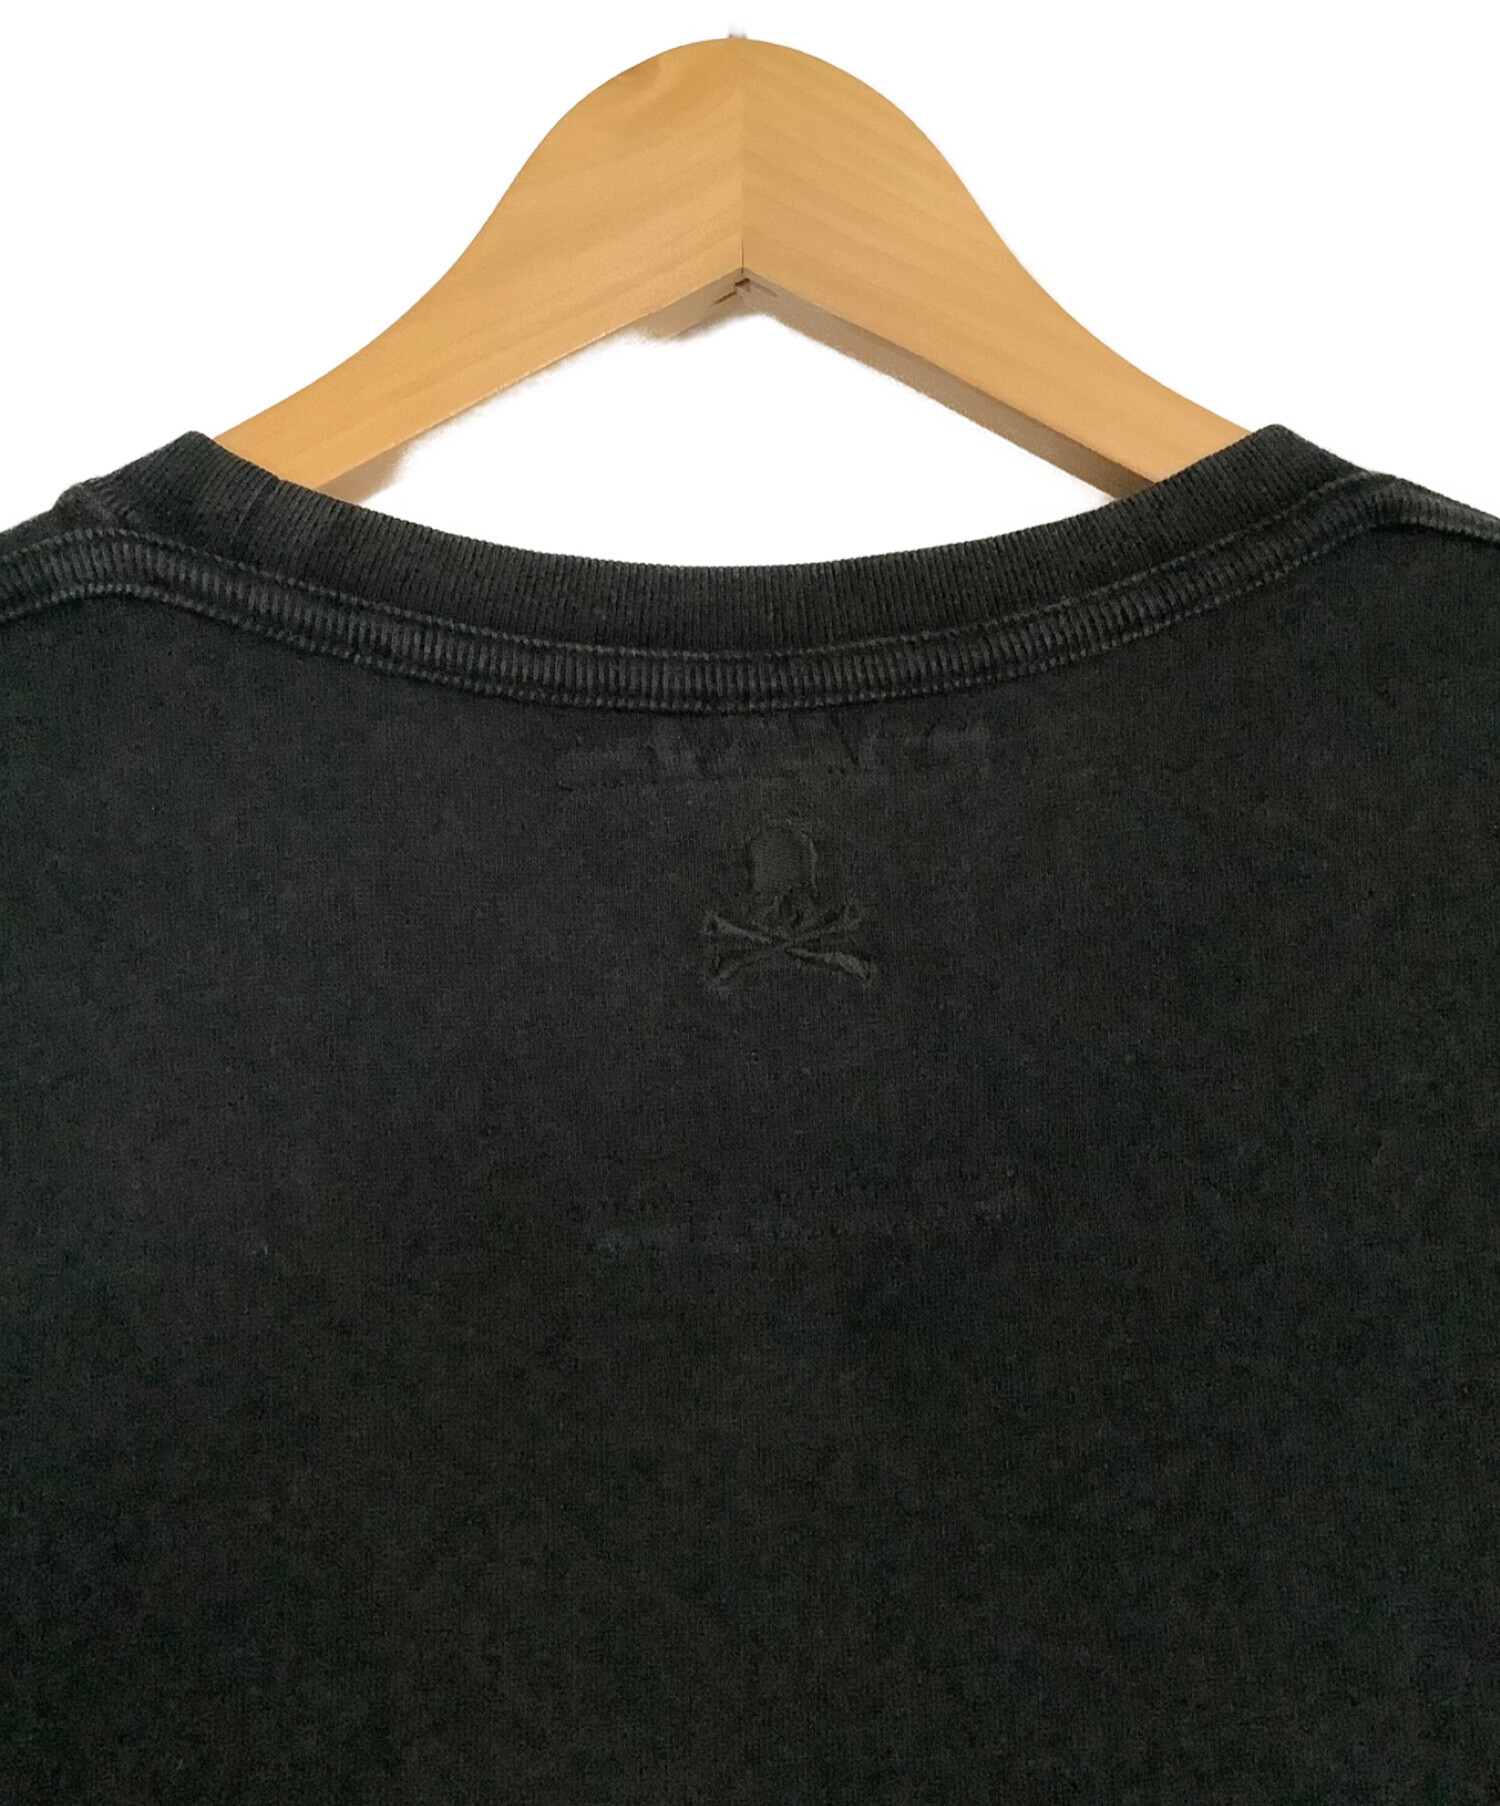 Roen (ロエン) Tシャツ ブラック サイズ:L 未使用品